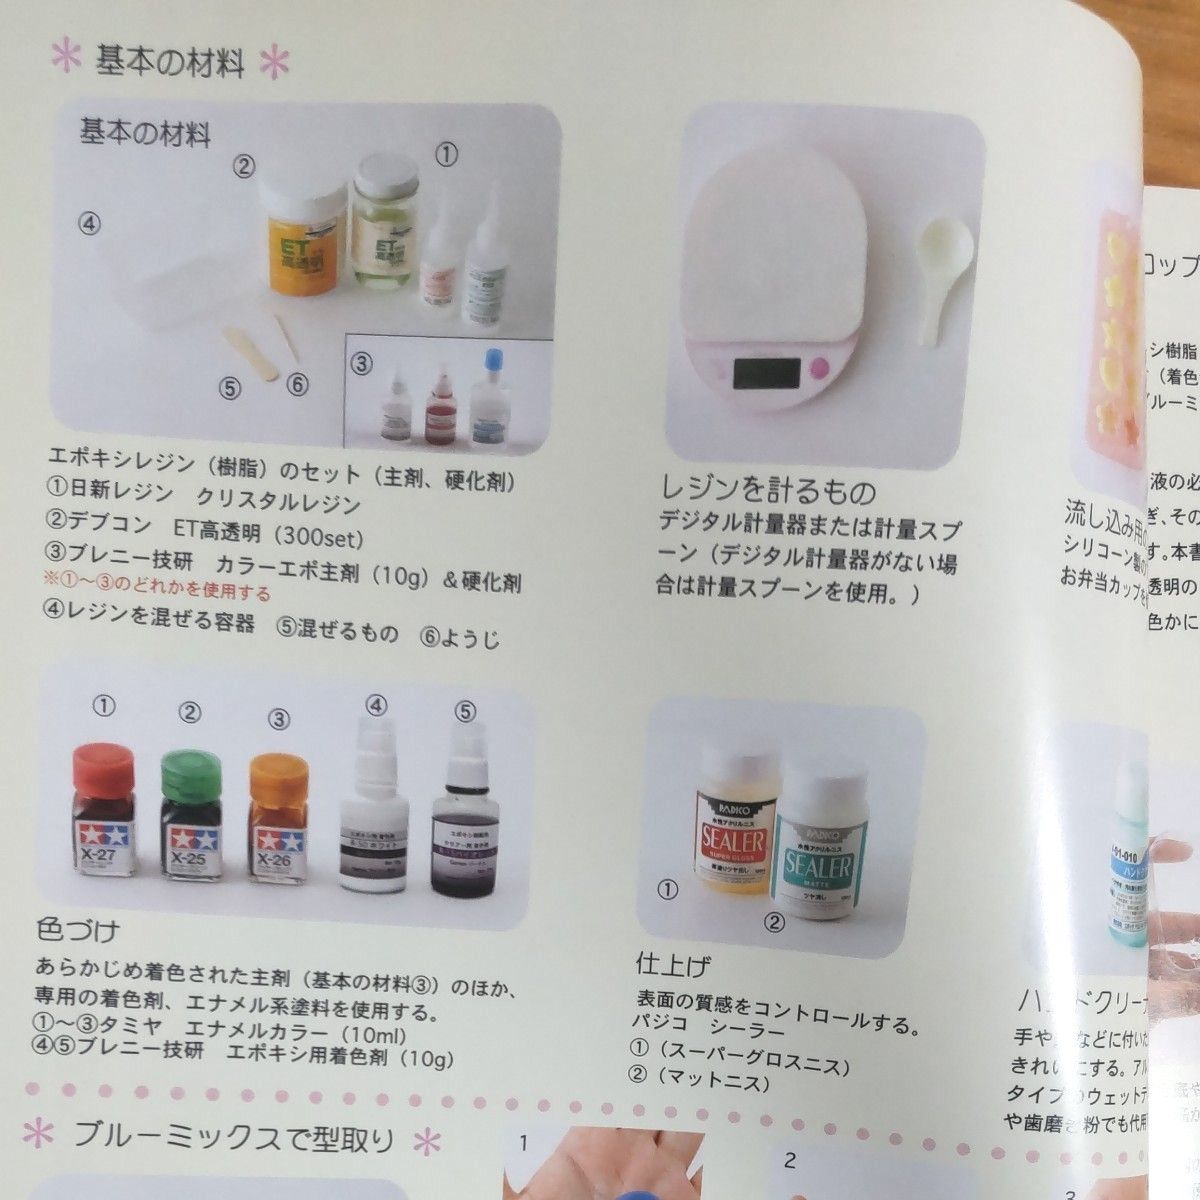 日本ヴォーグ社 『透明樹脂でつくる スイーツ & デコ雑貨』全64ページ